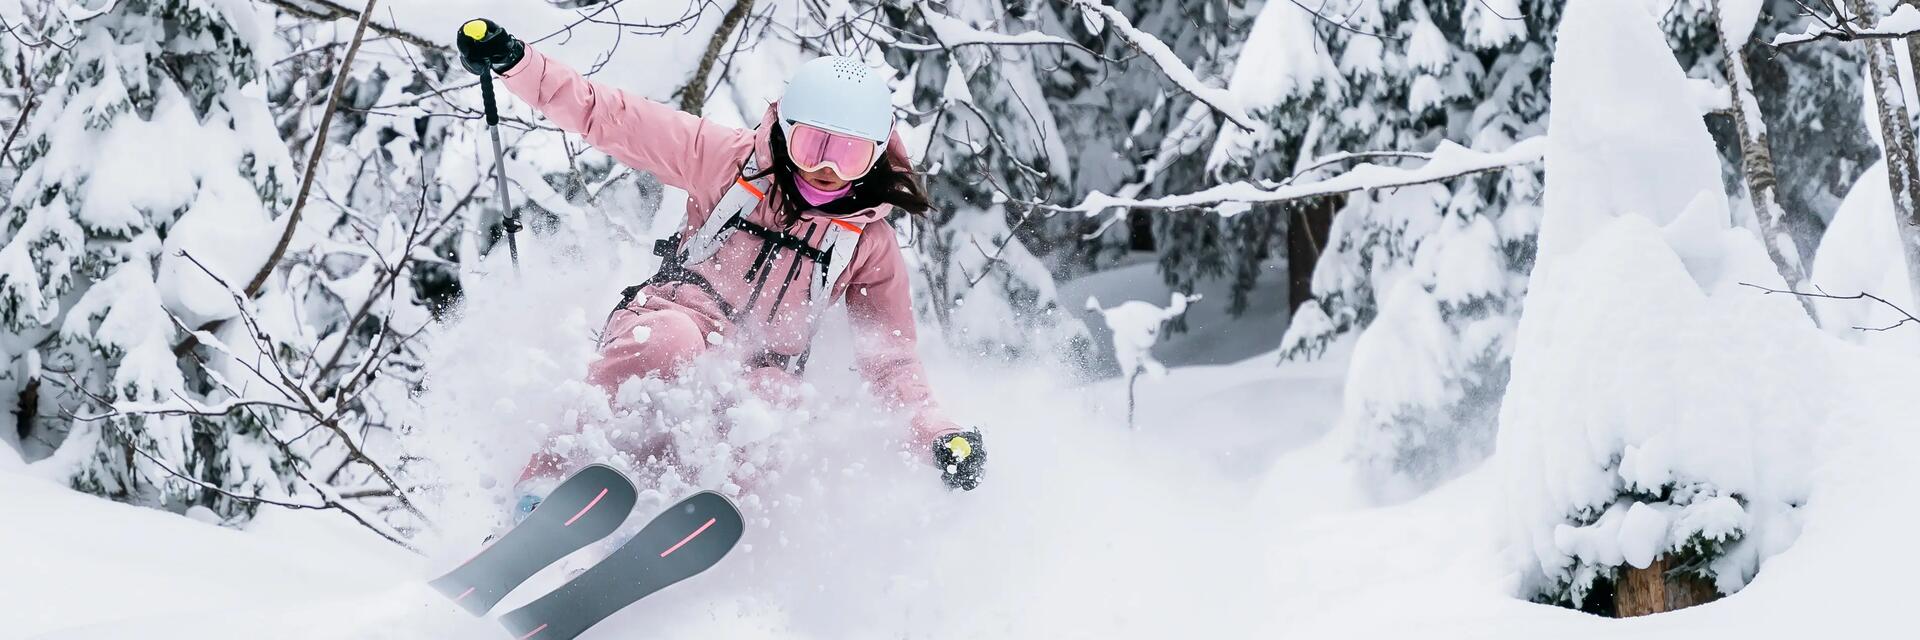 Wahl deiner Freeride-Skier, Ratschläge von Wedze